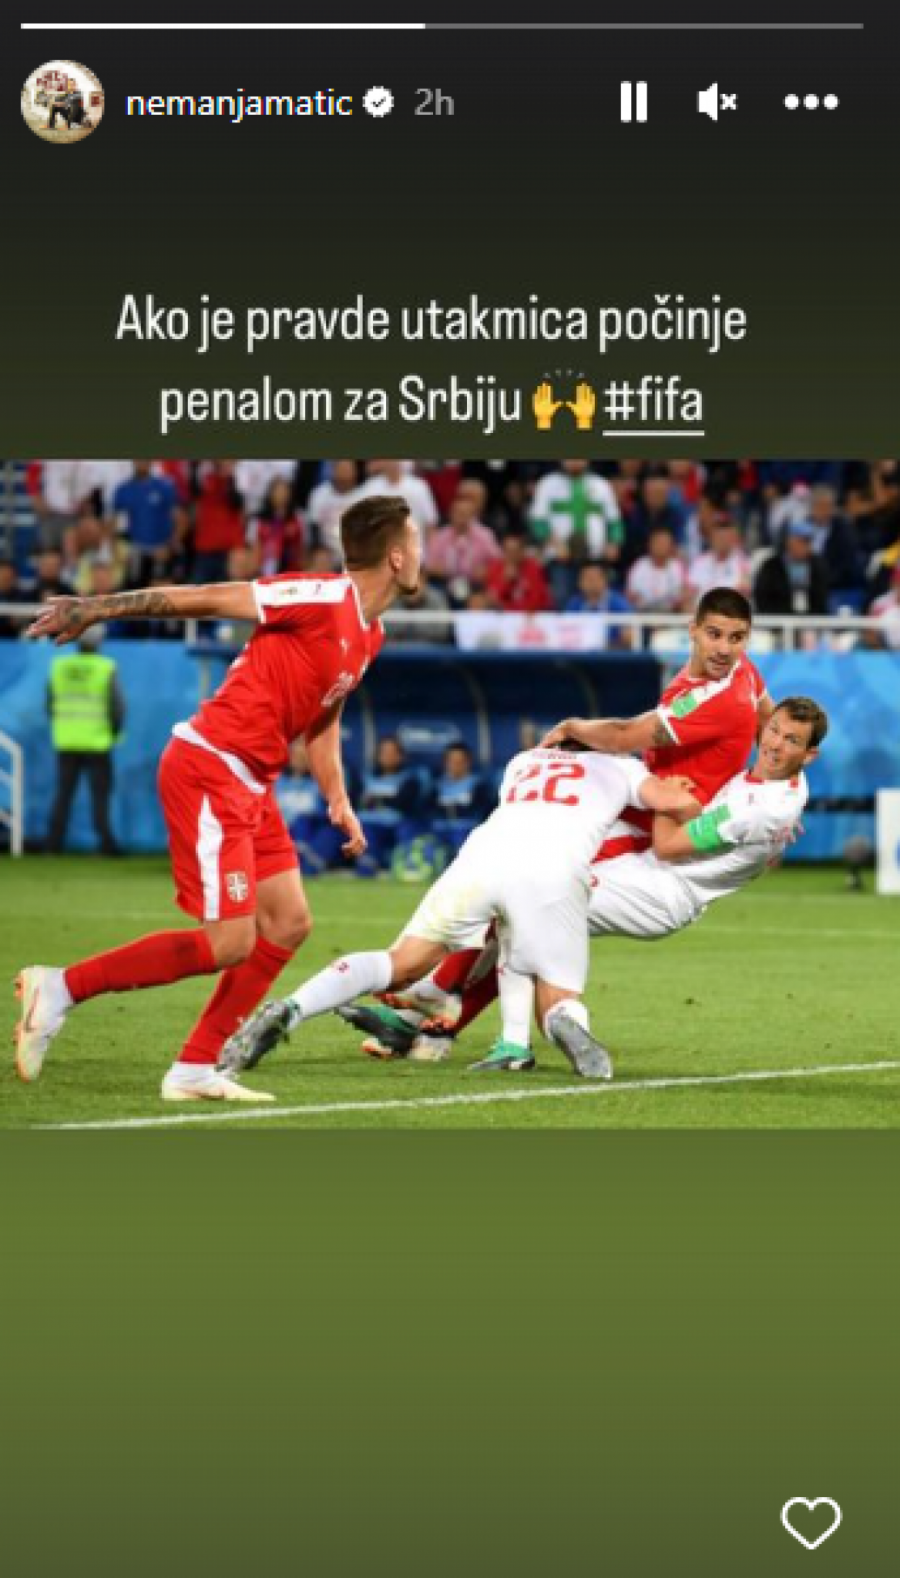 MATIĆ ZAPALIO DRUŠTVENE MREŽE Ako ima pravde, utakmica počinje penalom za Srbiju (FOTO)